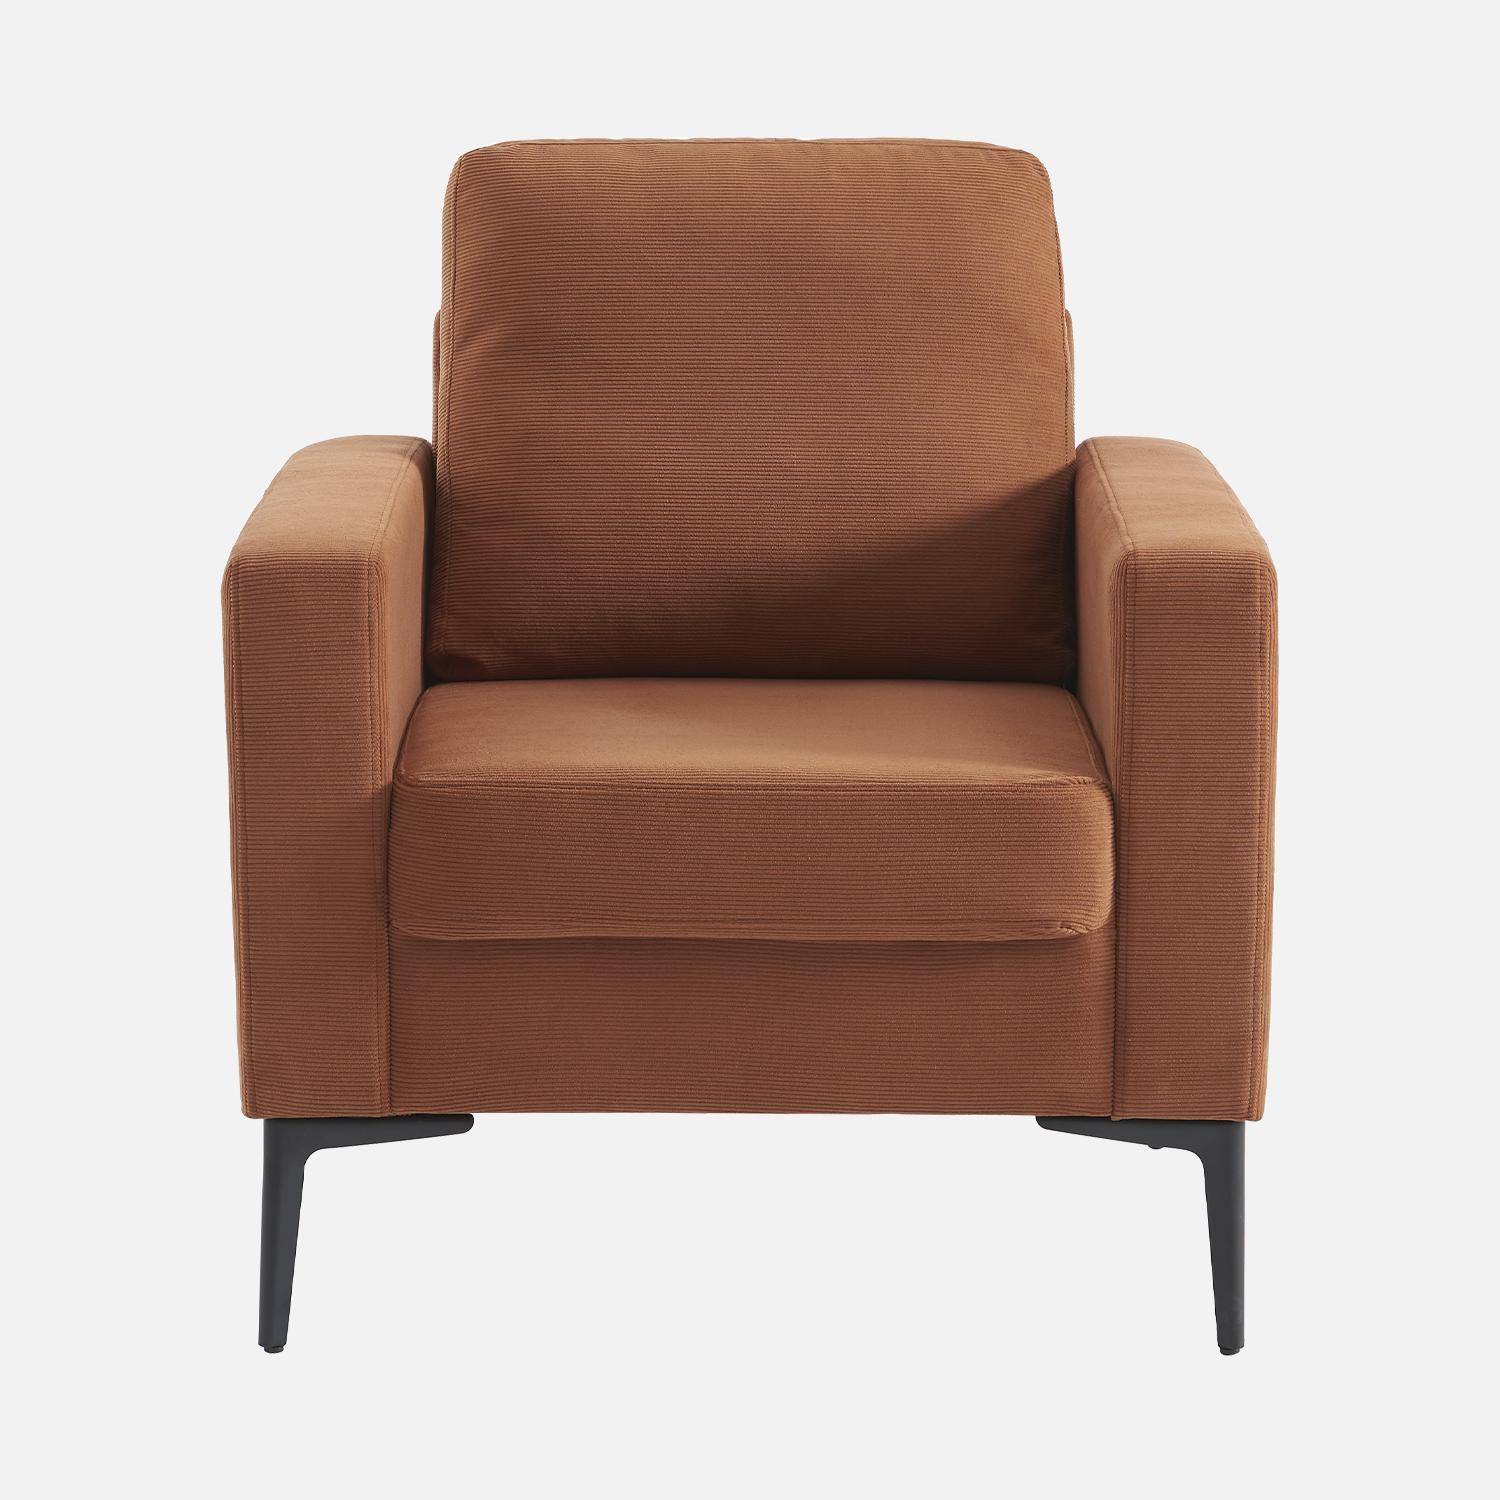 Terracotta corduroy fauteuil, Bjorn, 1-zits, met metalen poten Photo4